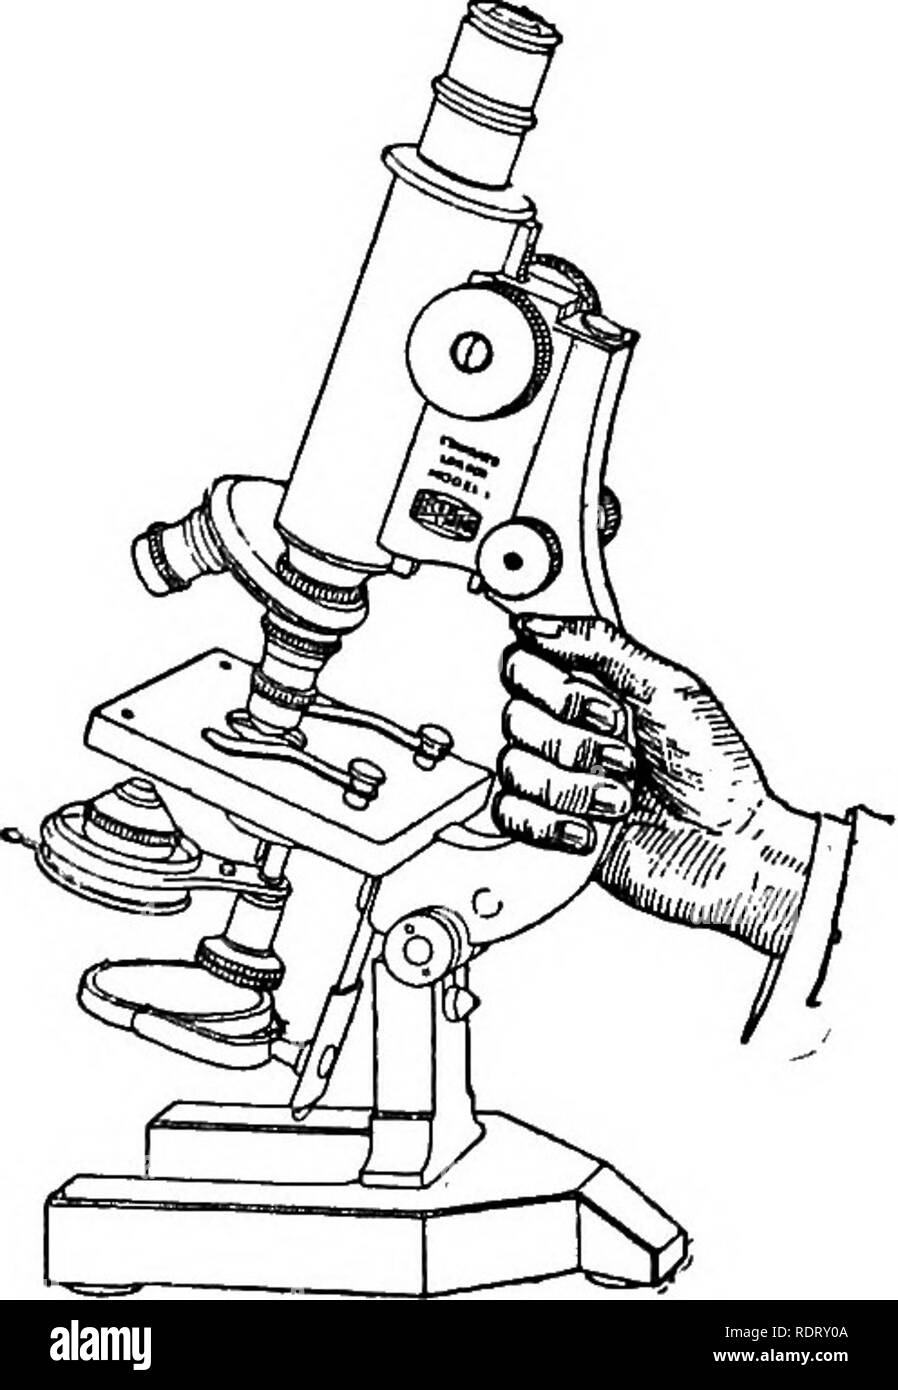 Das Mikroskop; ein einfaches Handbuch. Mikroskope. 94 DAS MIKROSKOP. Umb.  und mttst arbeiten mit einer gleichmäßigen Bewegung, mit der das  empfindlichste Einstellung für konzentrieren. Die grobe Einstellung sollte  in der Lage